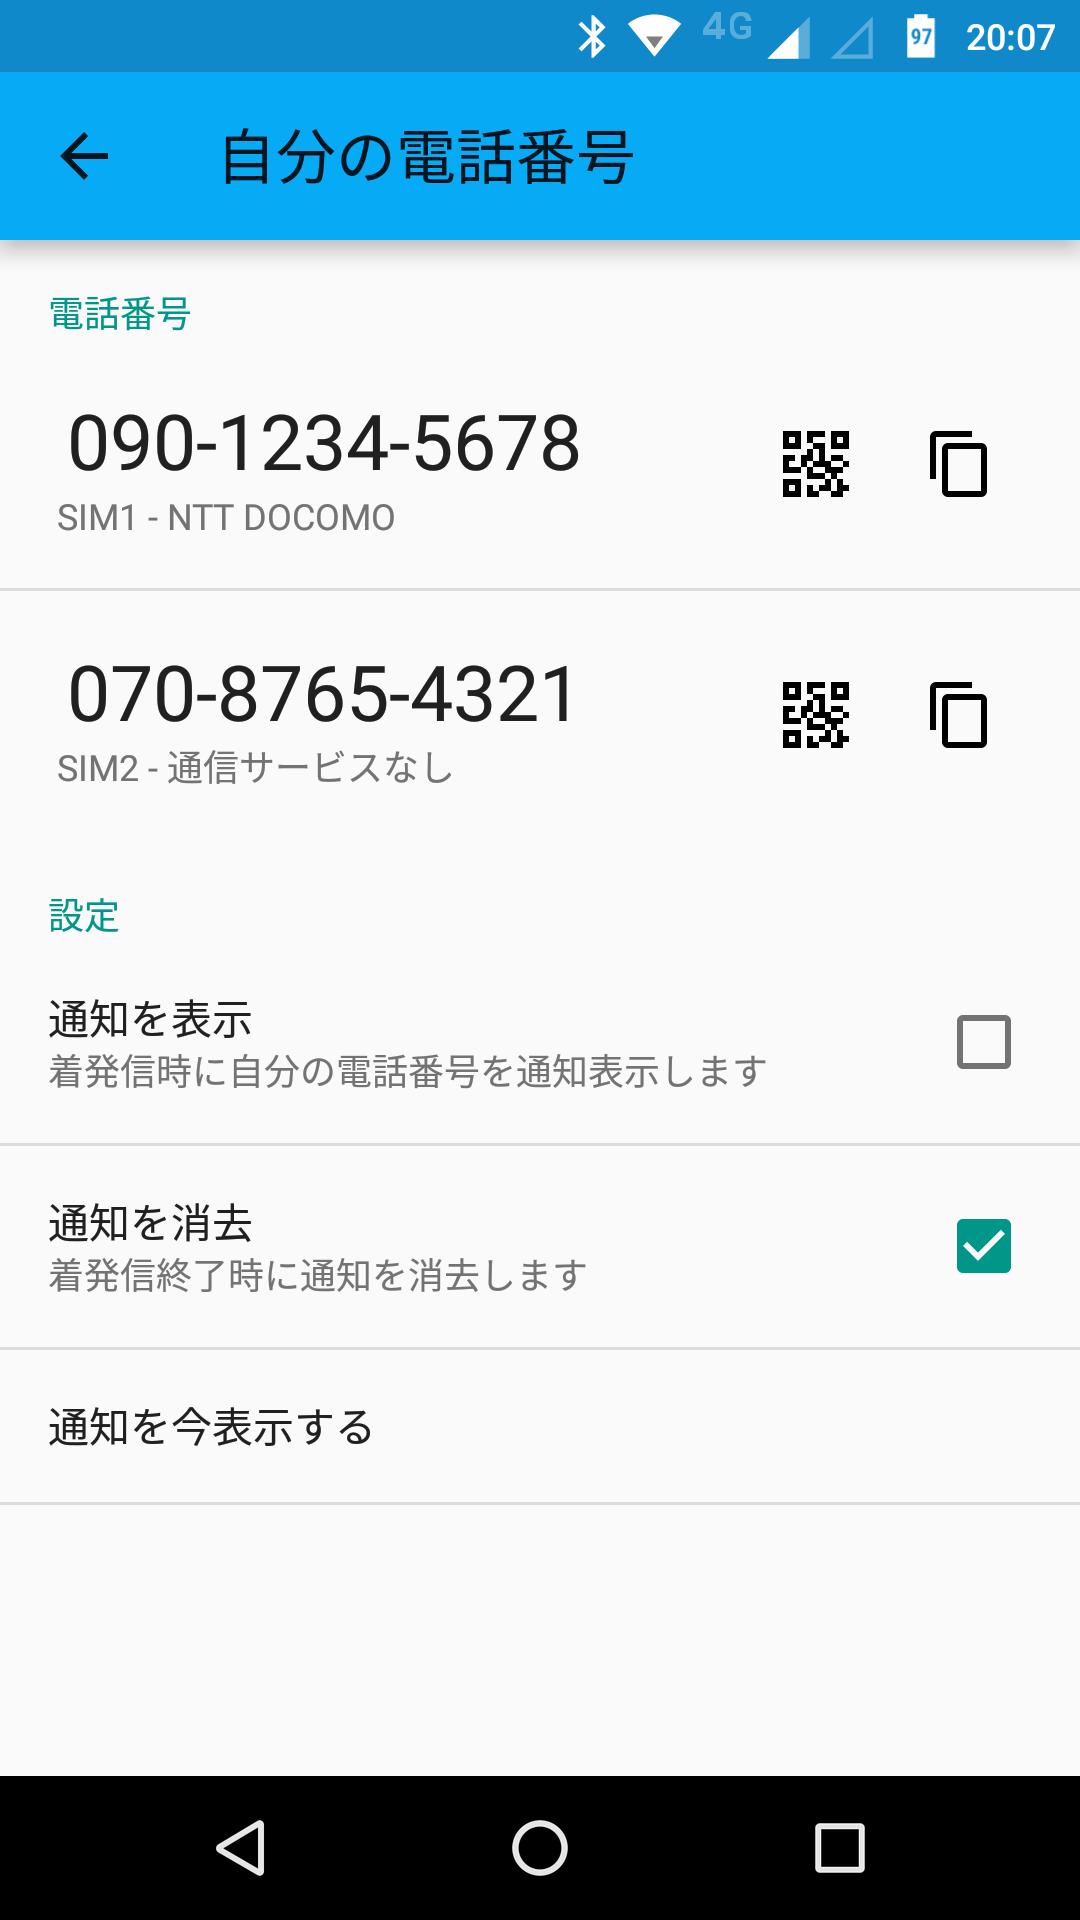 の 電話 番号 自分 【Androidスマホ】自分の電話番号を確認する方法